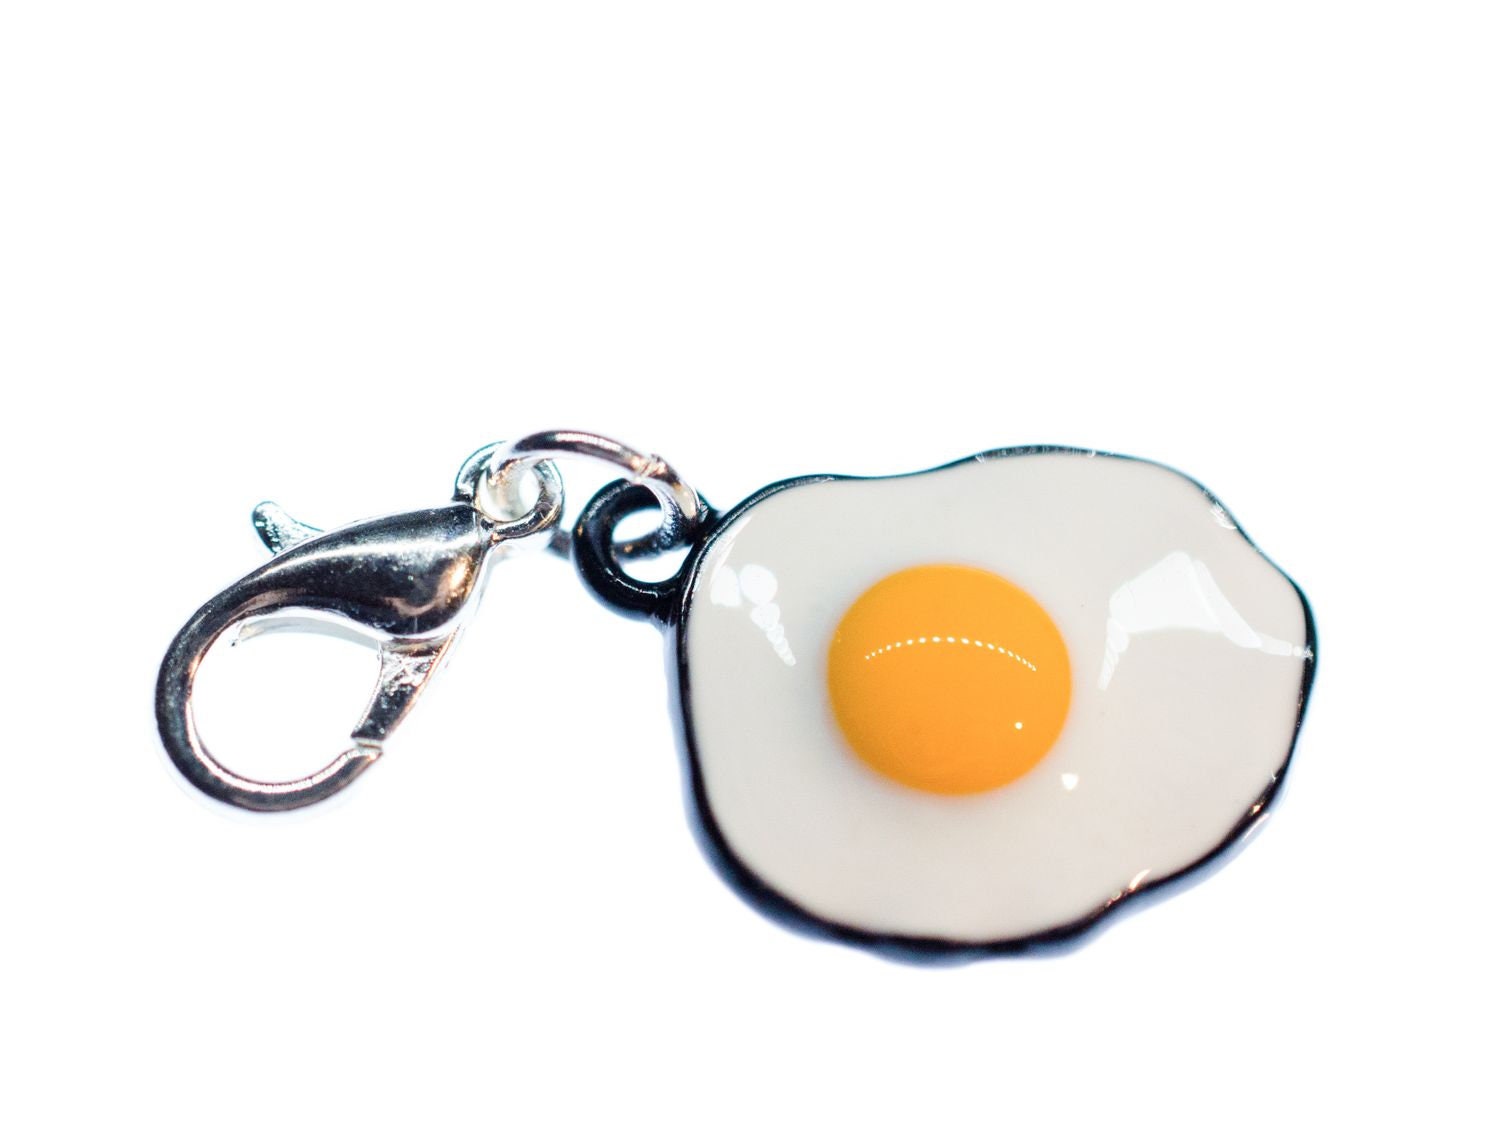 Spiegelei Charm Miniblings Frühstück Anhänger Spiegeleier Ei Brunch Essen von Miniblings